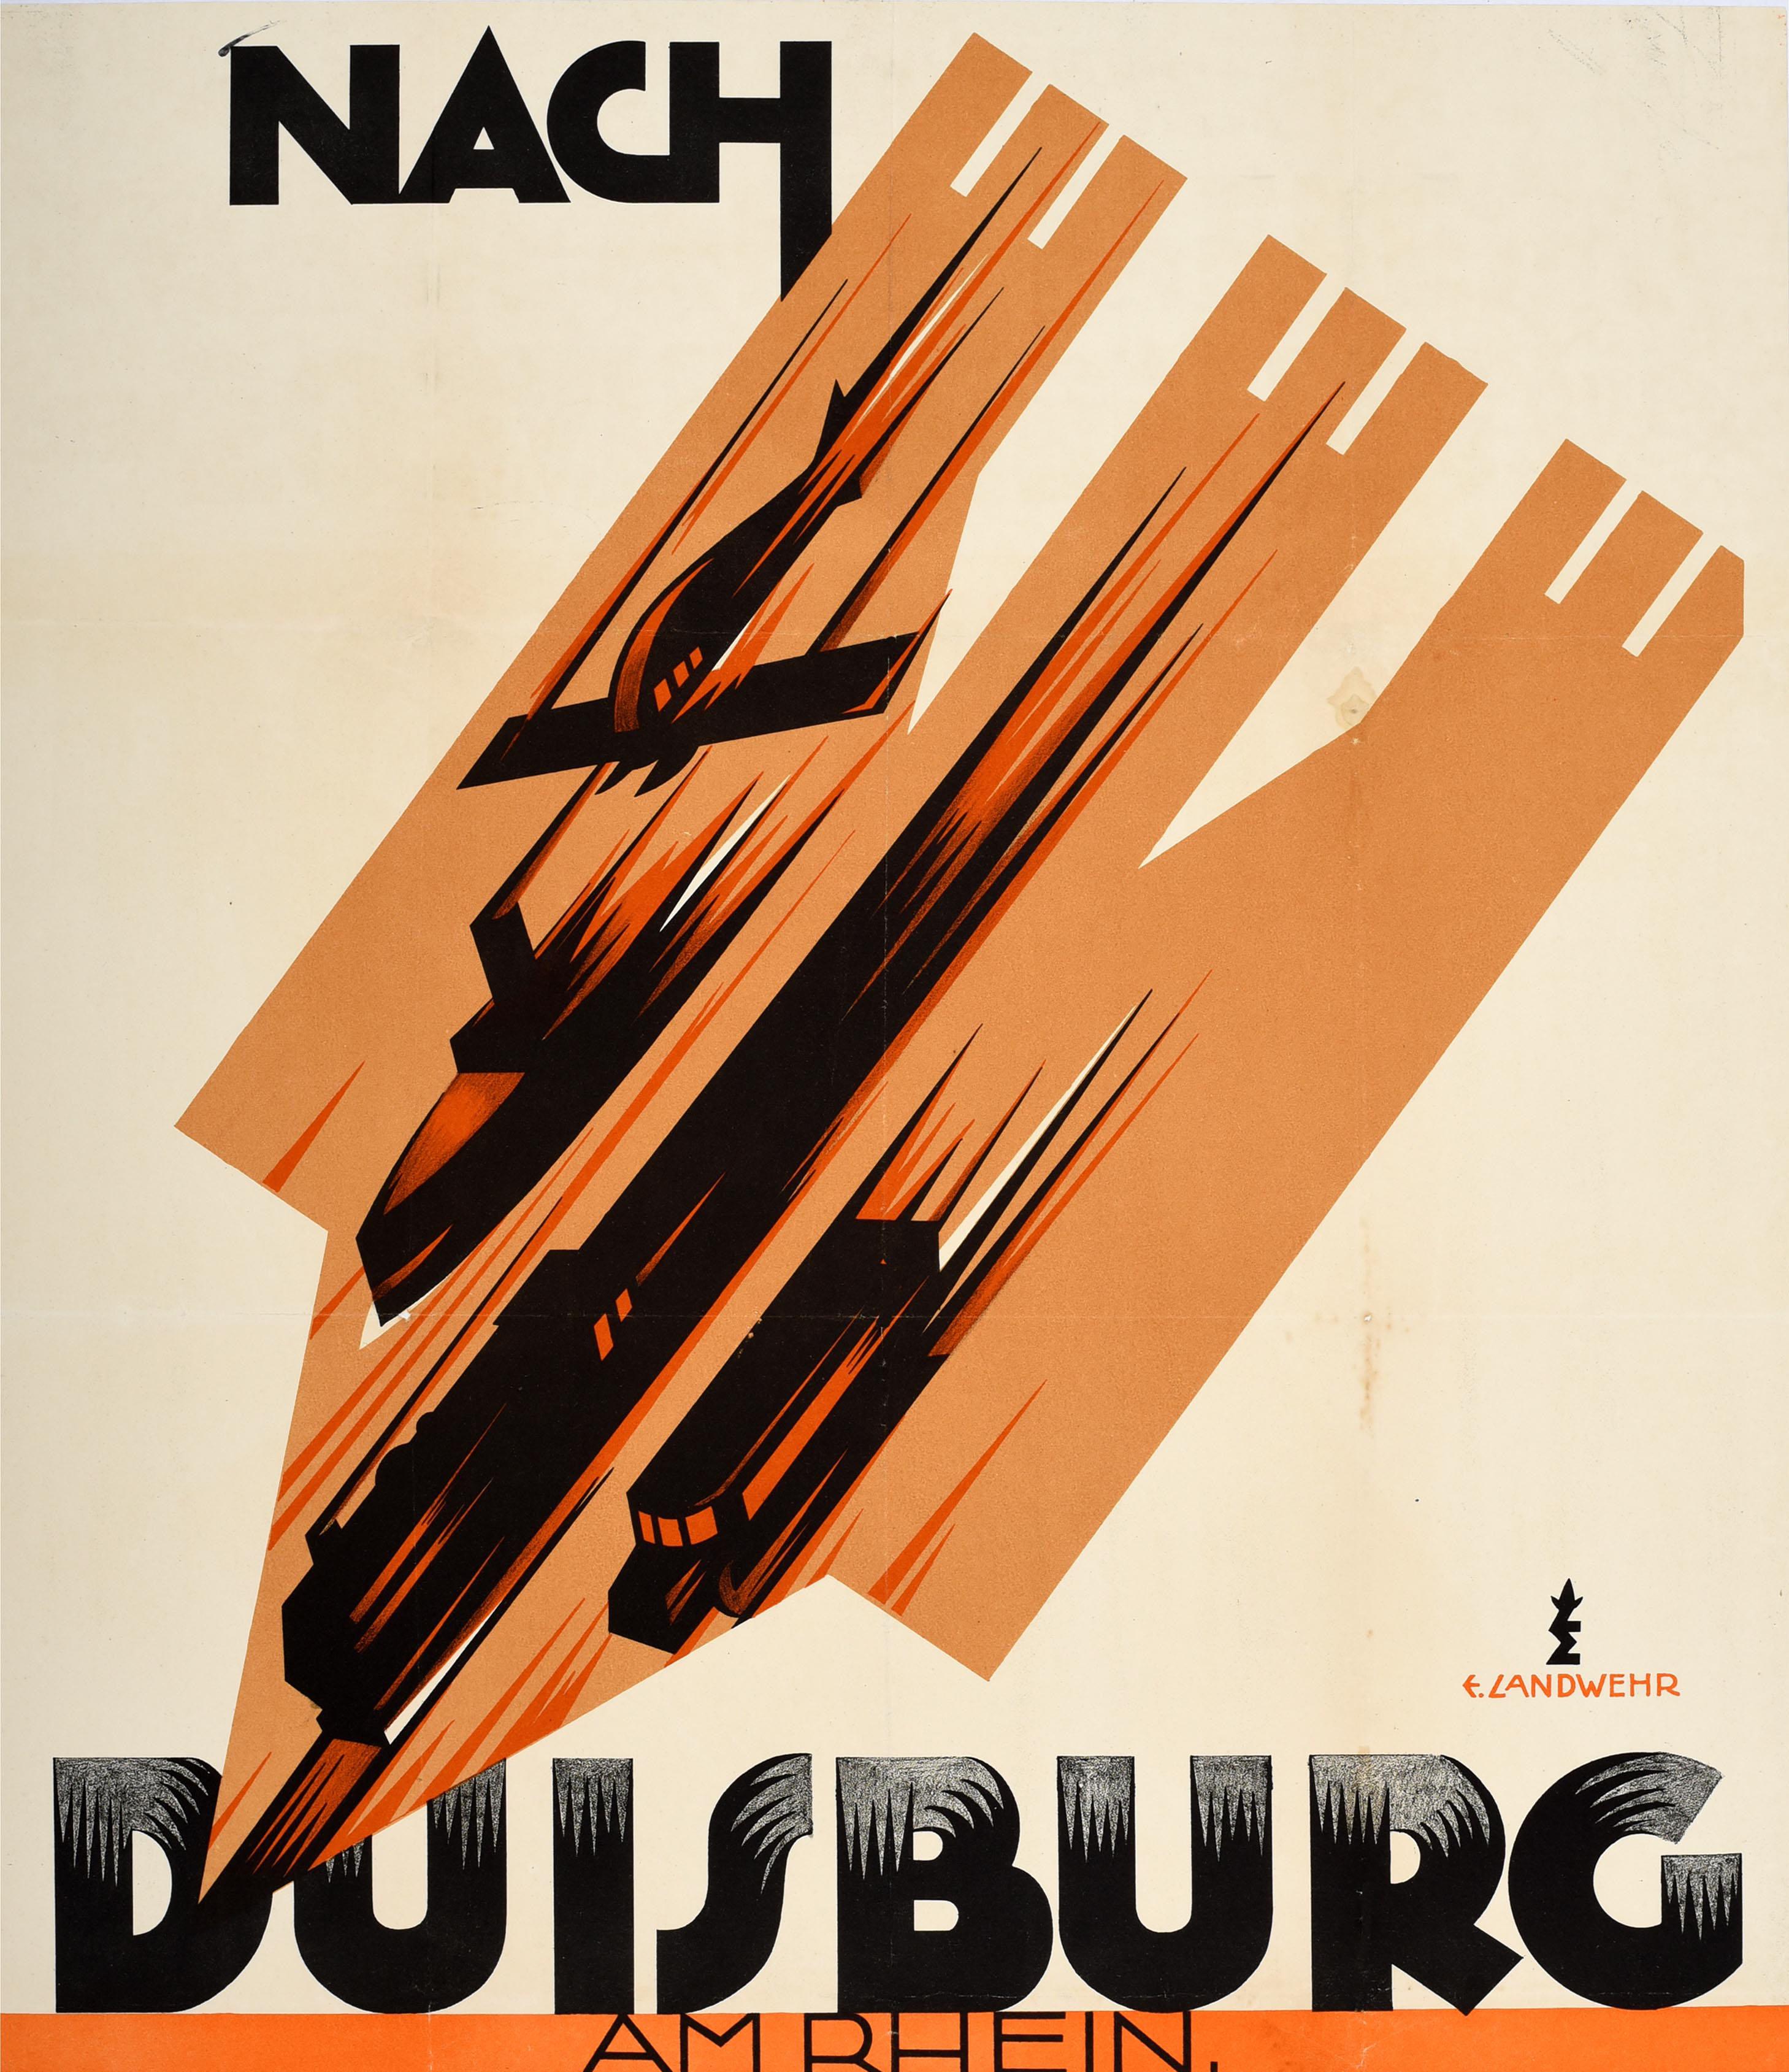 Original vintage event poster - To Duisburg on the Rhine for the 50th anniversary celebration of the Catholic Journeymen's Association / Nach Duisburg am Rhein zum 50 Jahr. Jubelfeier des Kath. Gesellen Vereins - held from 16 to 18 July 1927